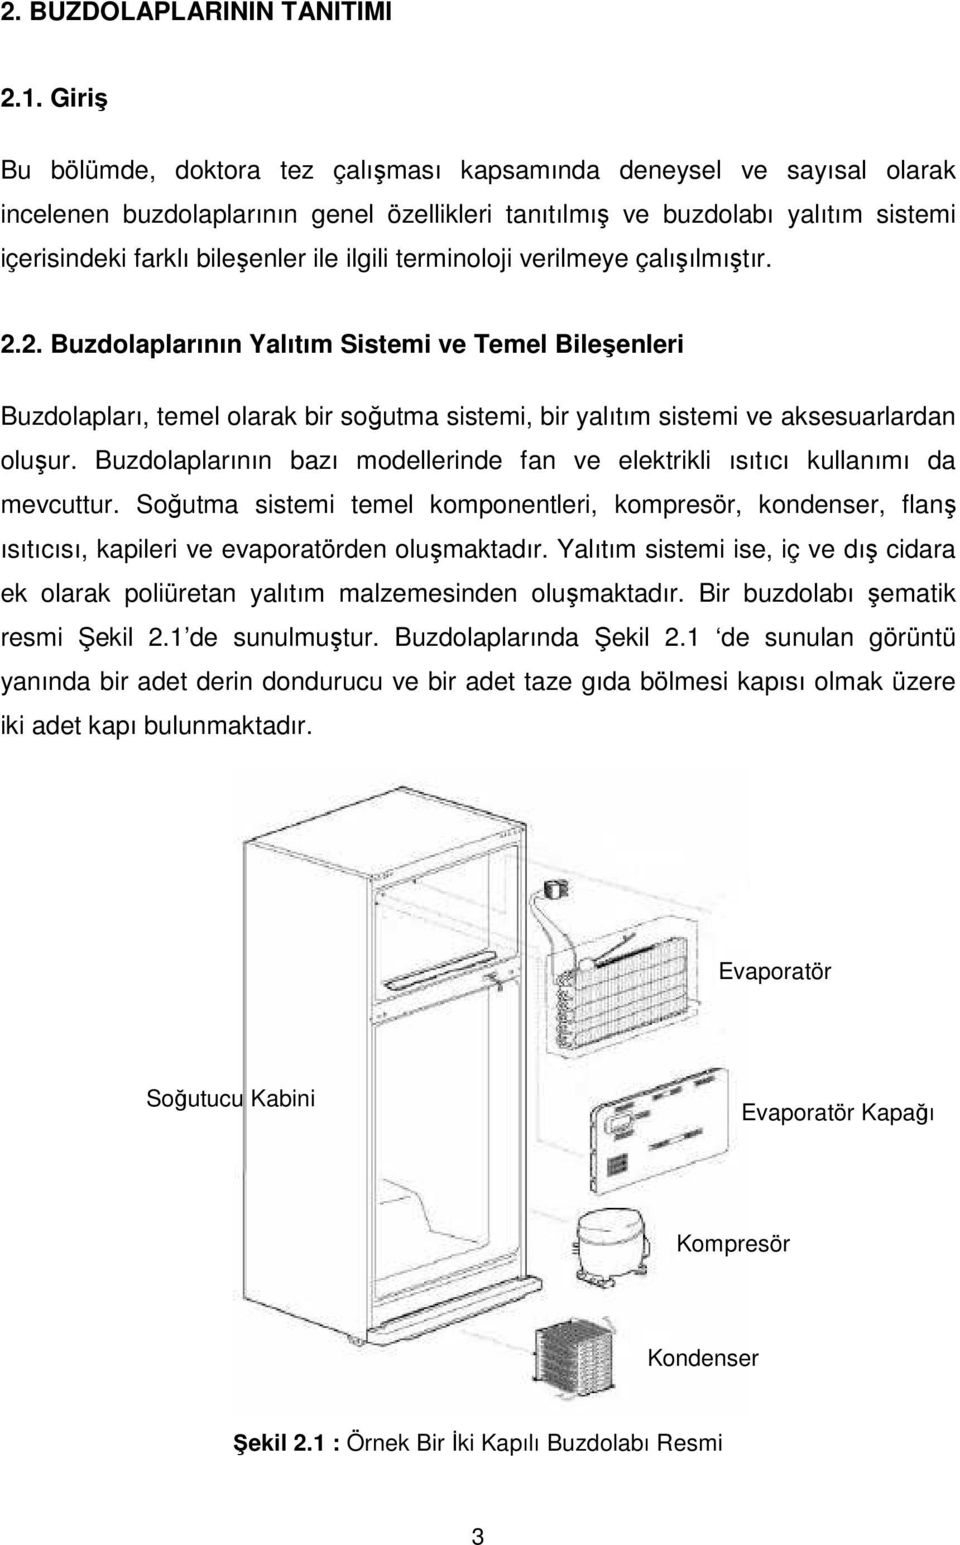 ilgili terminoloji verilmeye çalışılmıştır. 2.2. Buzdolaplarının Yalıtım Sistemi ve Temel Bileşenleri Buzdolapları, temel olarak bir soğutma sistemi, bir yalıtım sistemi ve aksesuarlardan oluşur.